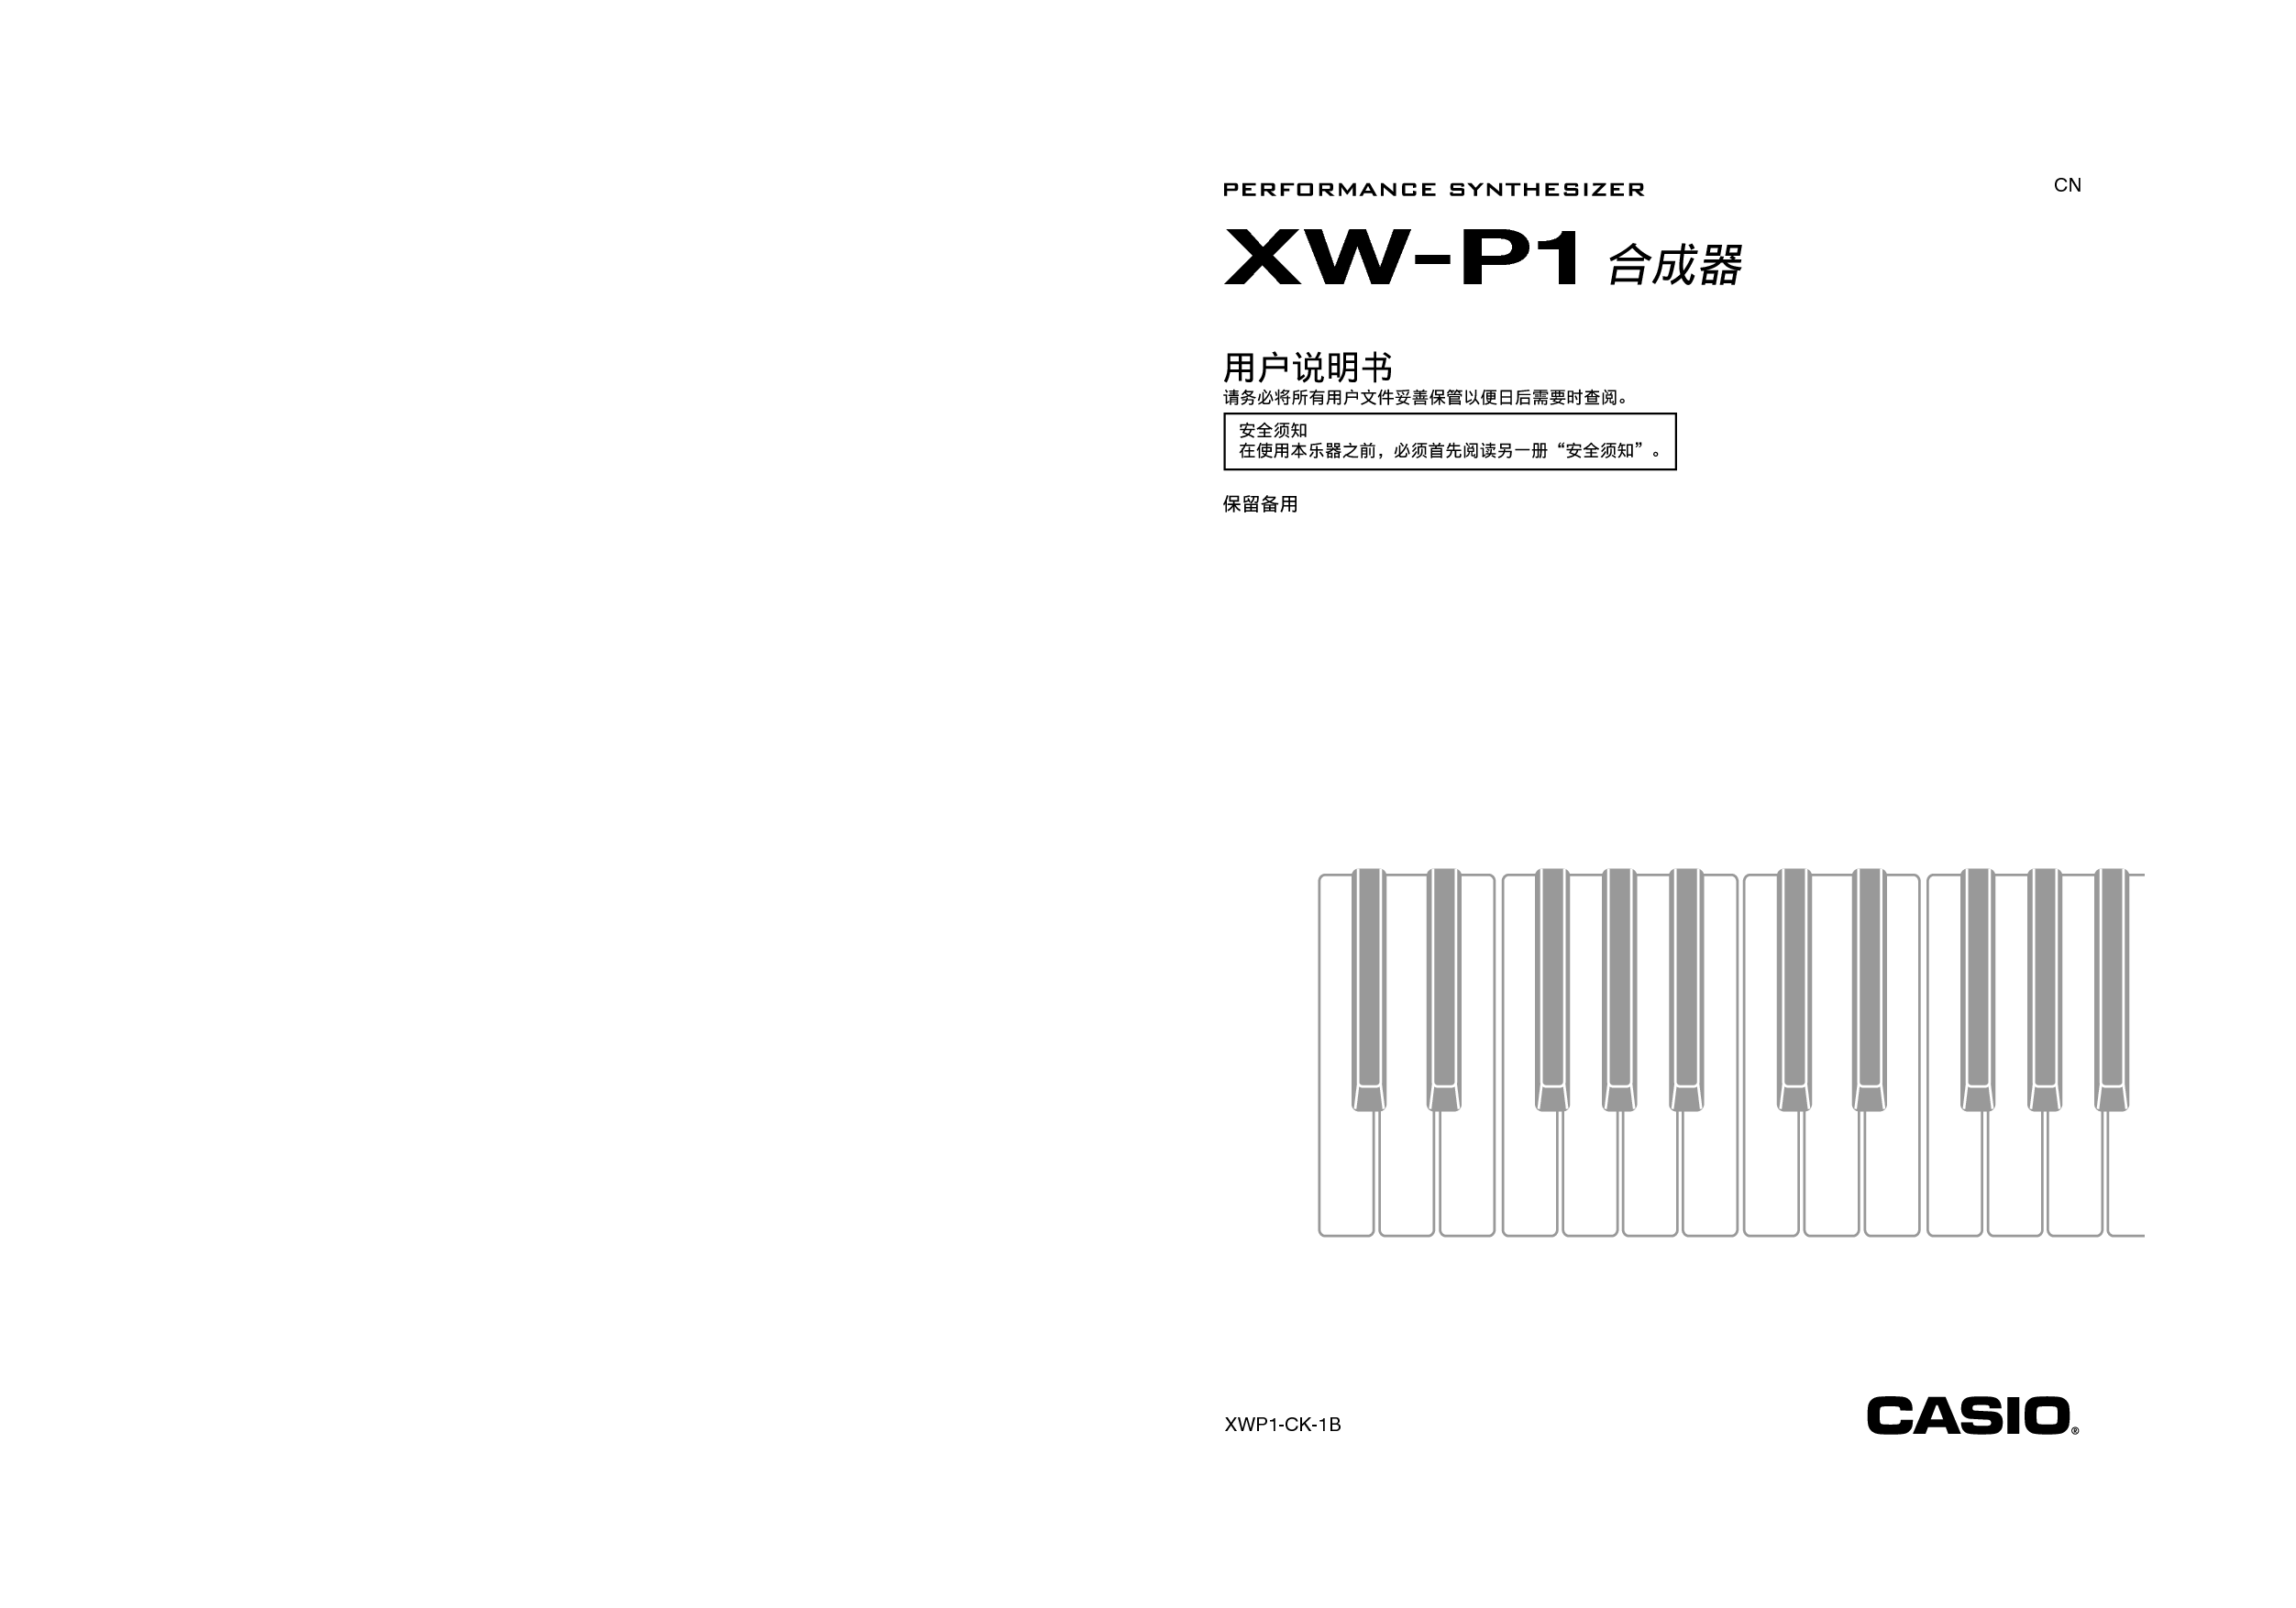 卡西欧 Casio XW-P1 使用说明书 封面